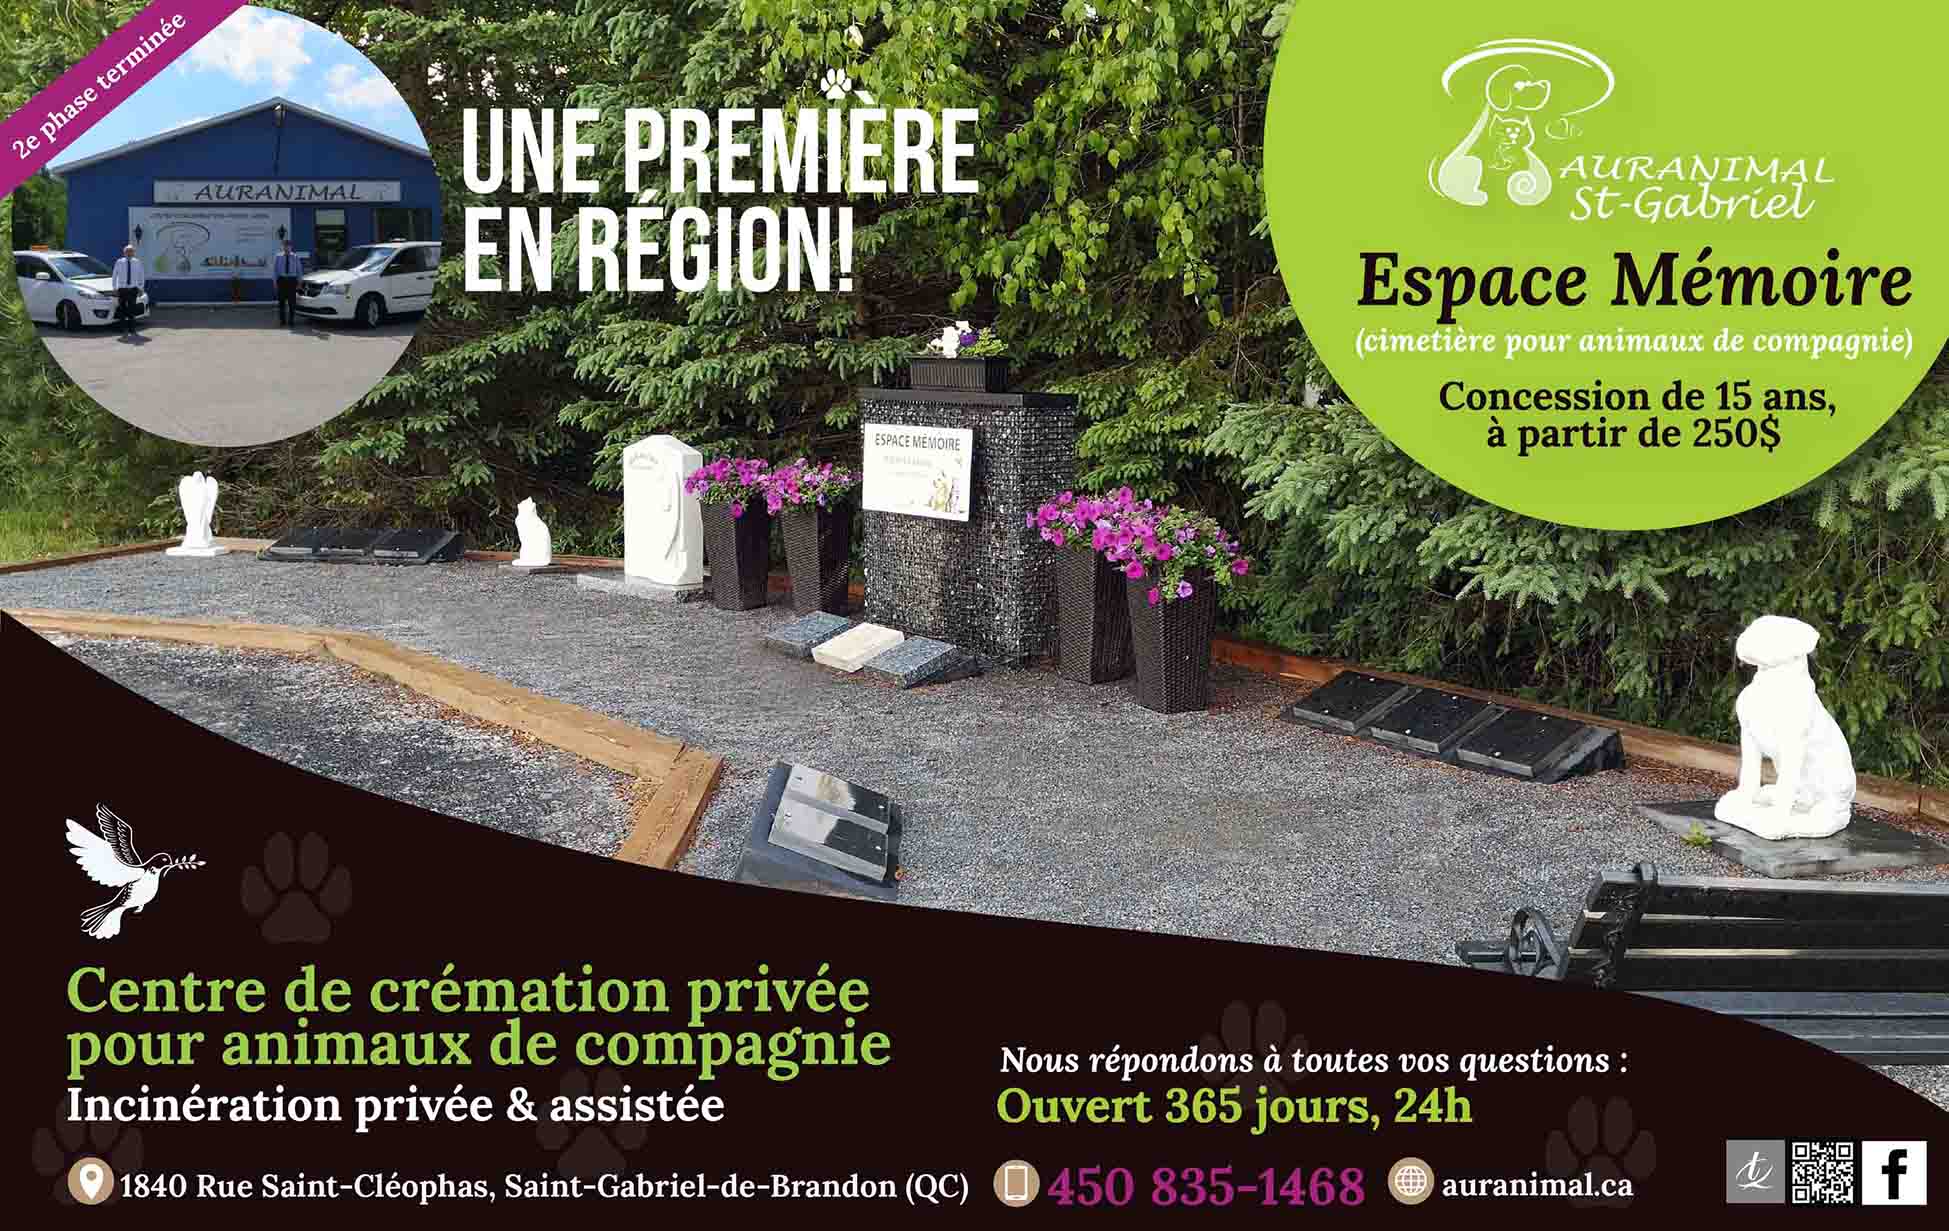 Auranimal St-Gabriel-Espace Mémoire-cimetière-juin-2021